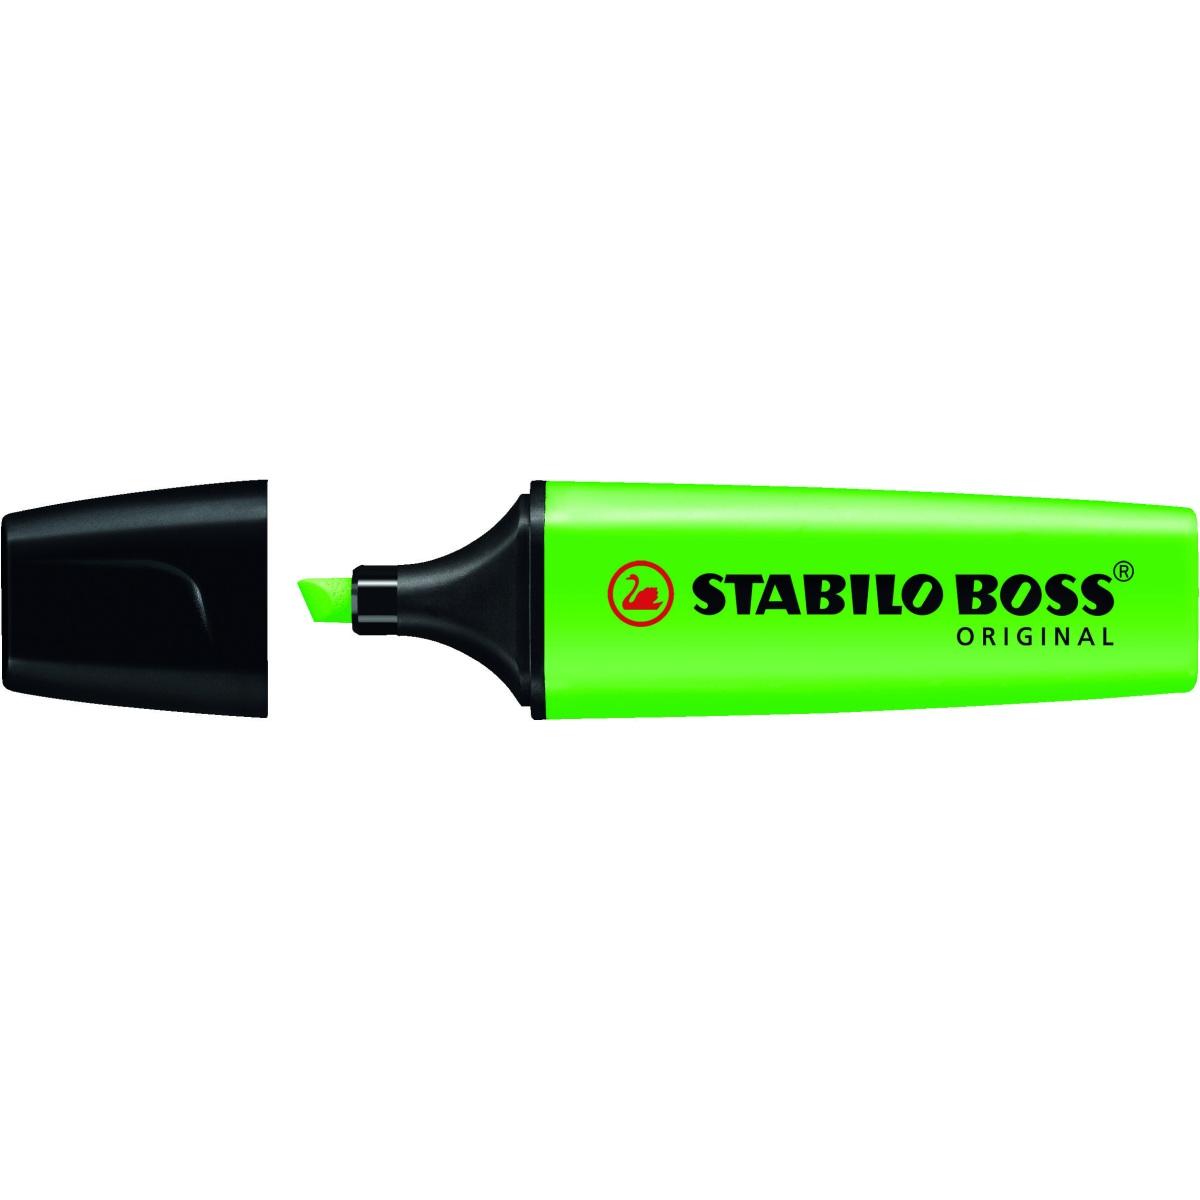 STABILO - 6070/33 - Evidenziatore green boss® 2-5 mm verde - Confezione da  10 PZ - 4006381436656